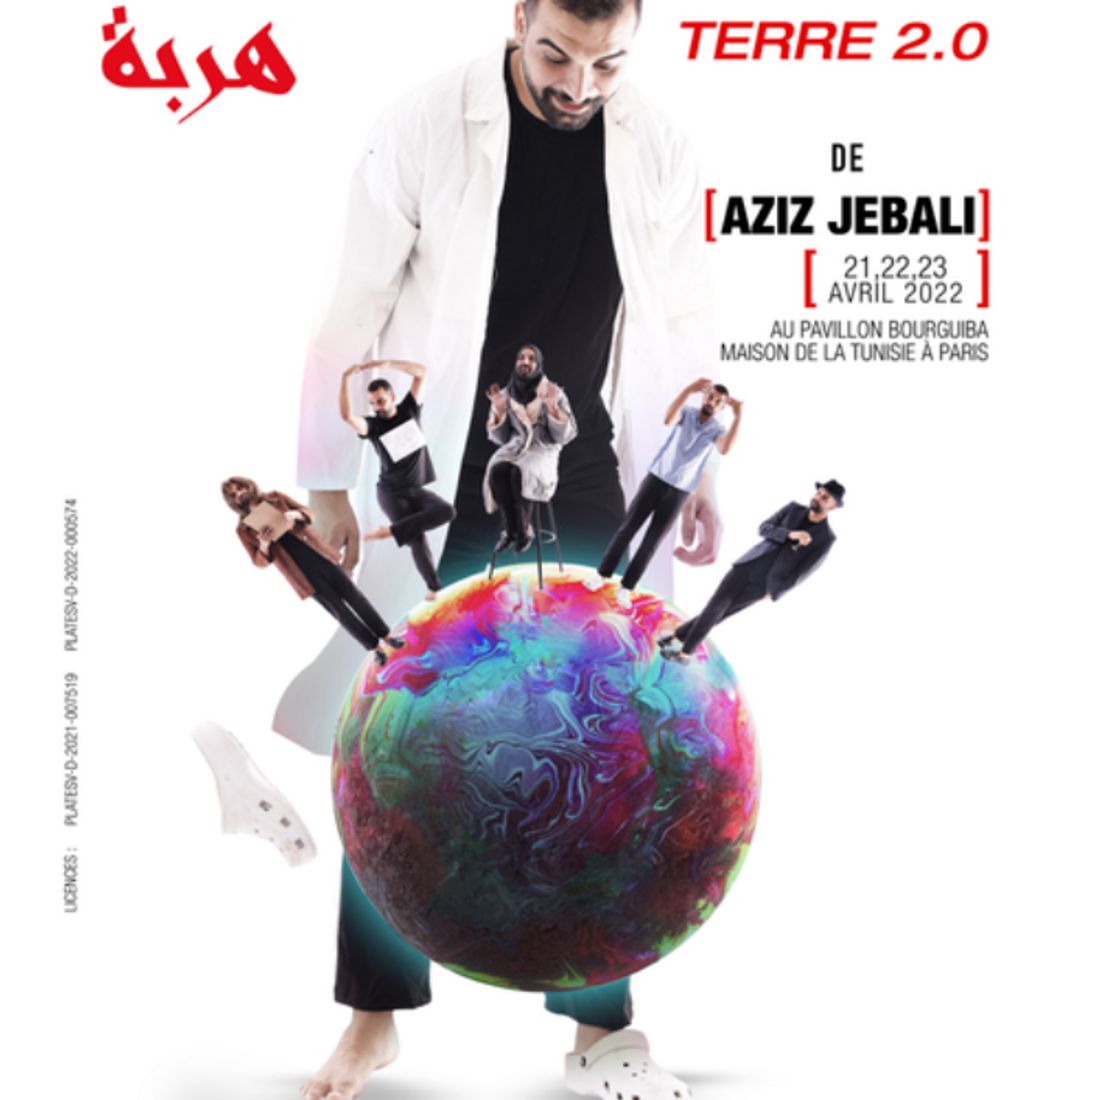 Aziz Jebali : un acteur tunisien à Paris